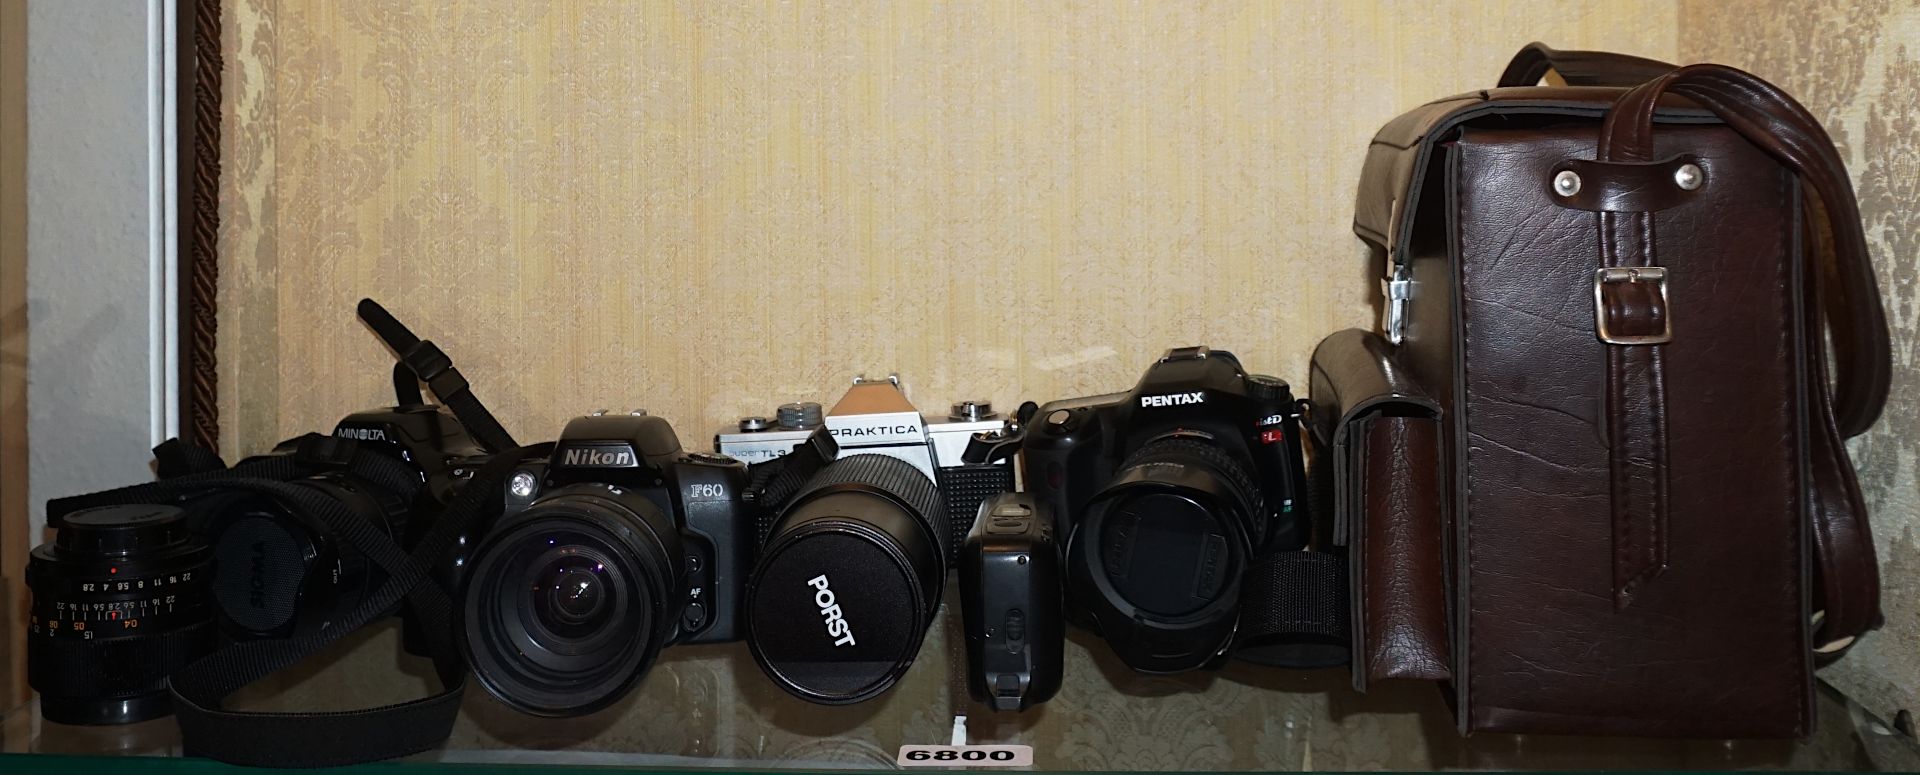 1 Konv. Fotoapparate PRAKTICA "Super TL3", NIKON "F60", PENTAX "istD", MINOLTA "Dynax 3xi" - Image 2 of 2